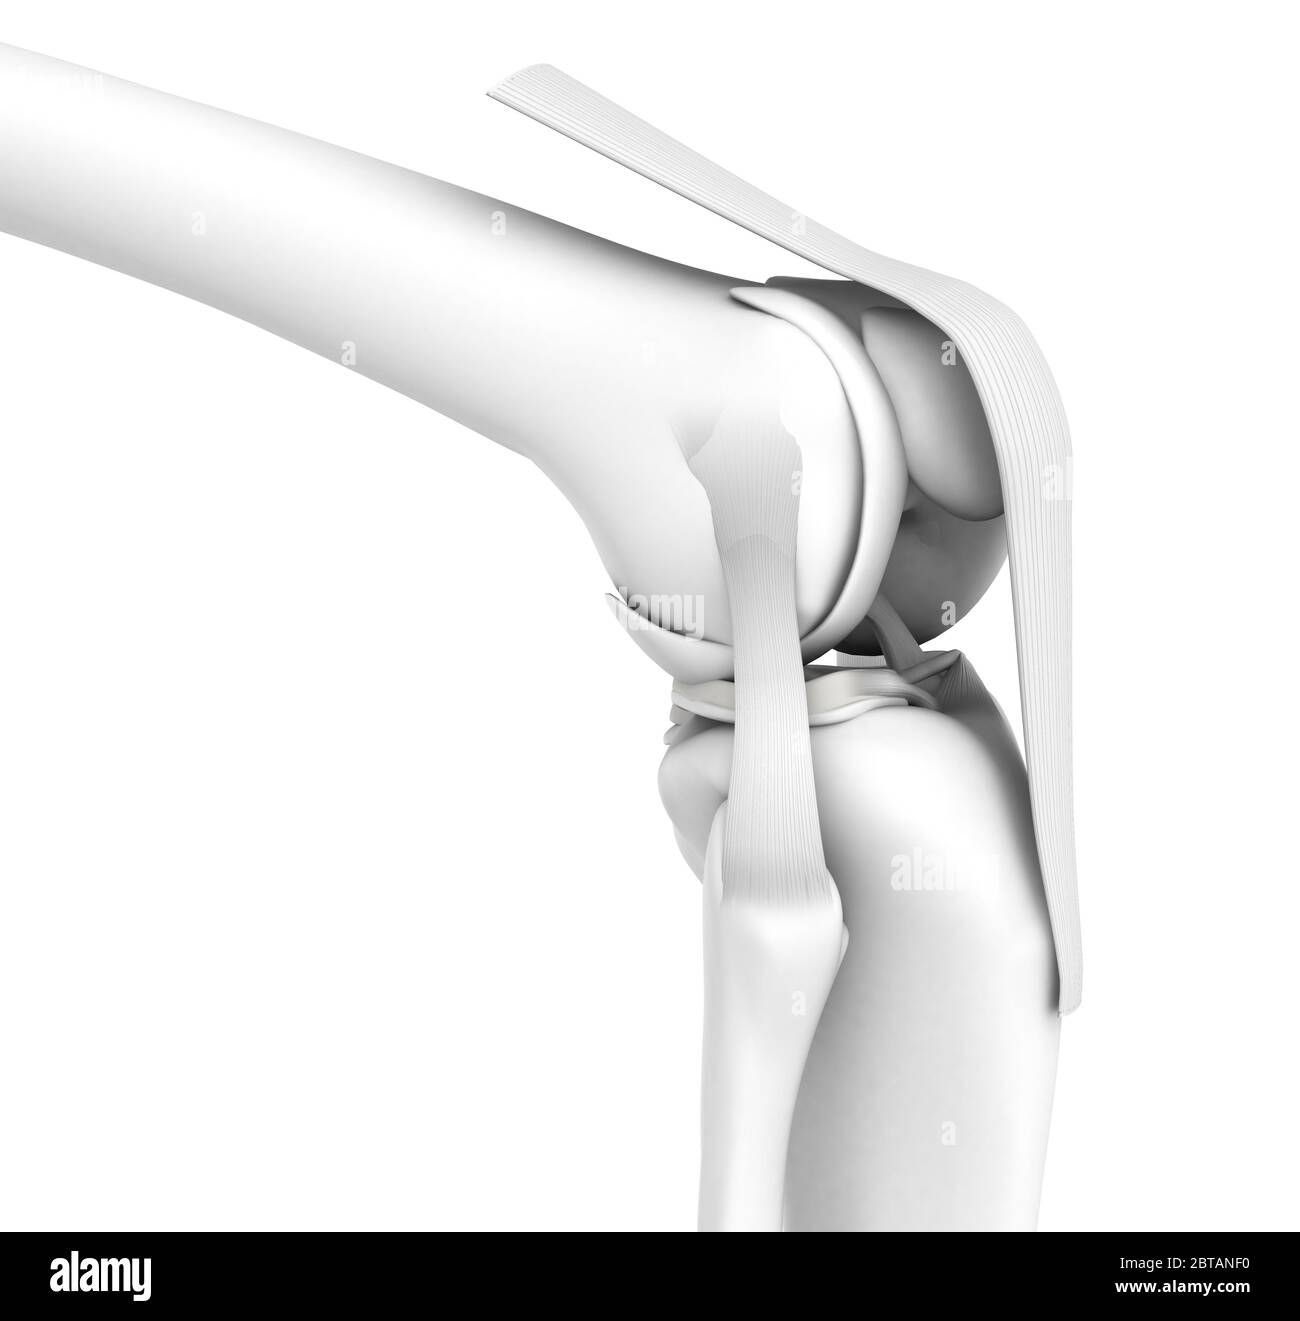 Illustrazione 3D che mostra l'articolazione del ginocchio con femore, tibia, capsula articolare, menisco e legamenti, simulazione medica su sfondo bianco Foto Stock